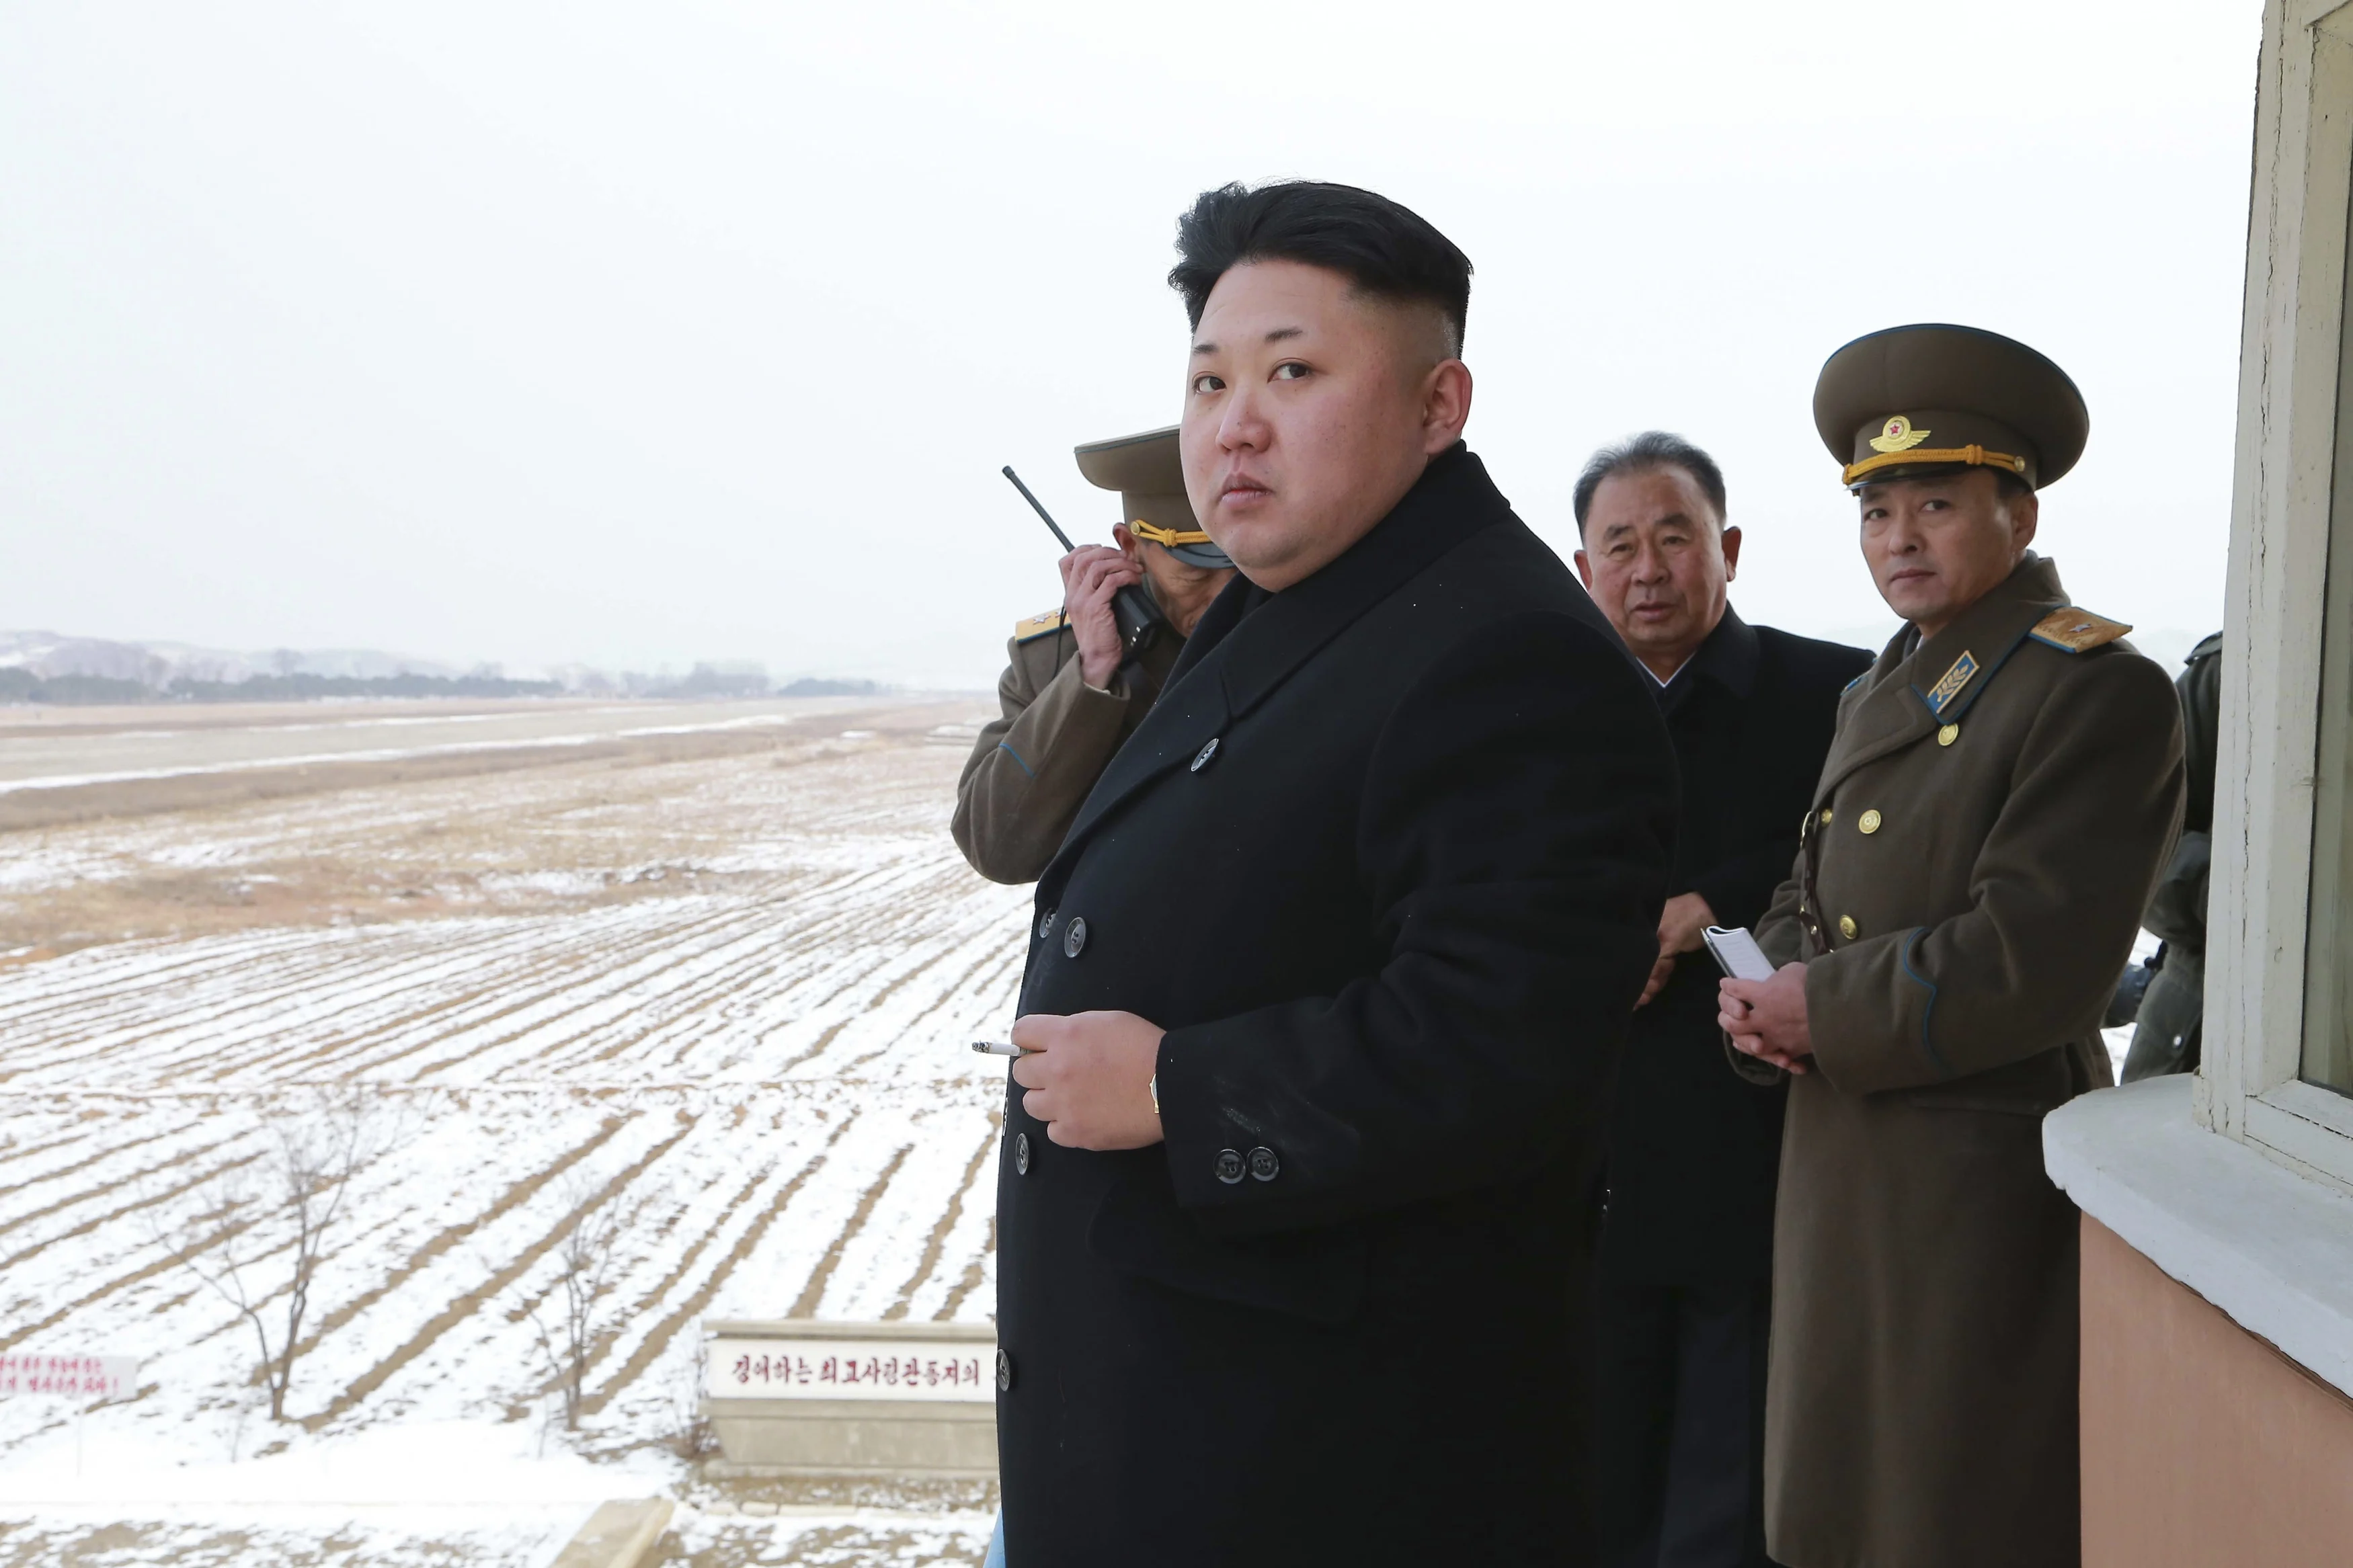 קים ז'ונג און, מנהיג קוריאה הצפונית